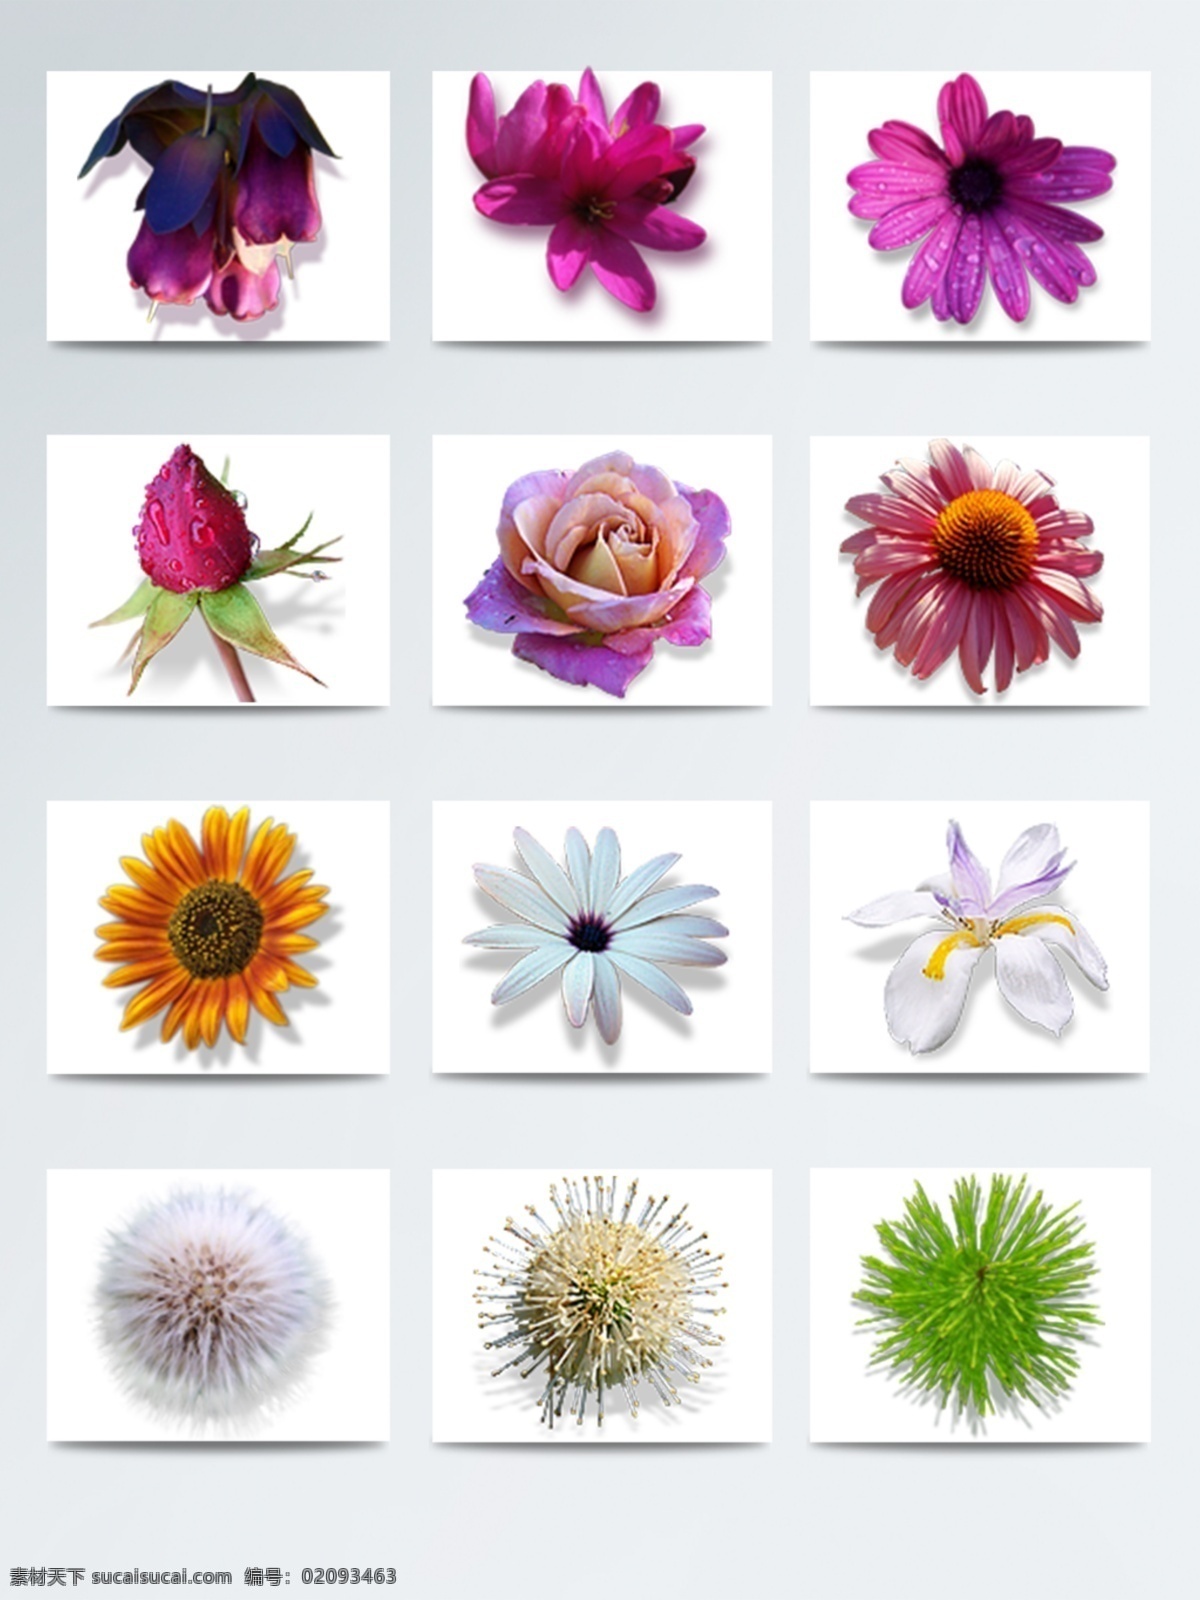 花朵 高清 仿真 图标素材 高清花朵图片 花朵高清图片 花朵素材 花朵图片 美丽花朵